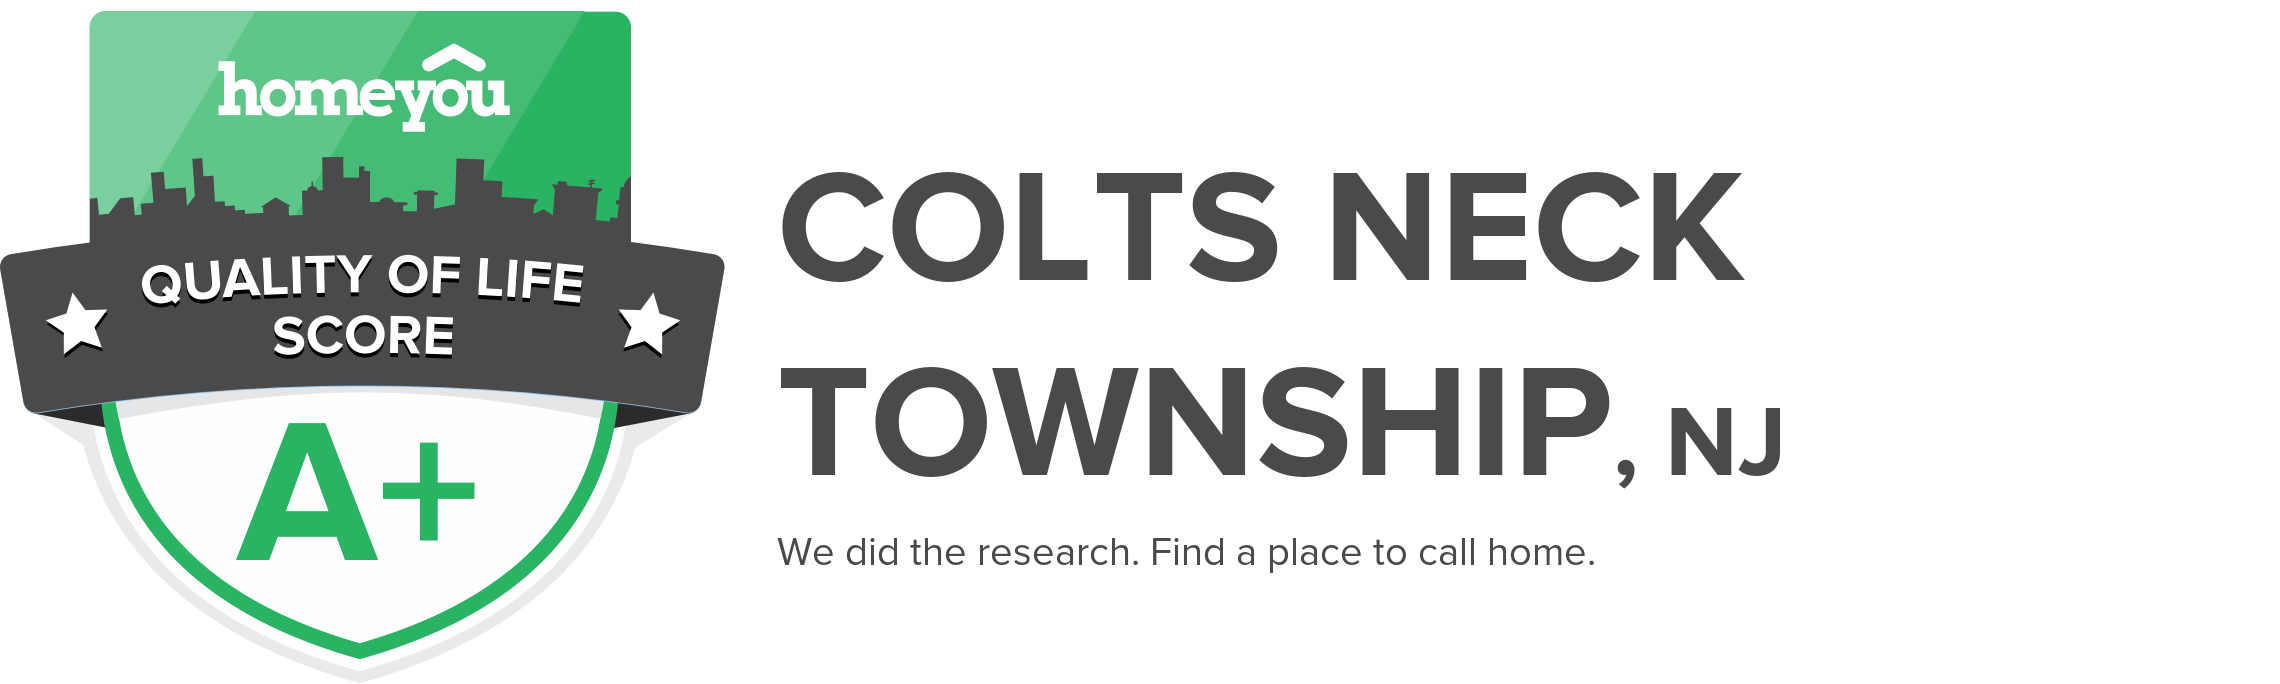 Colts Neck Township, NJ